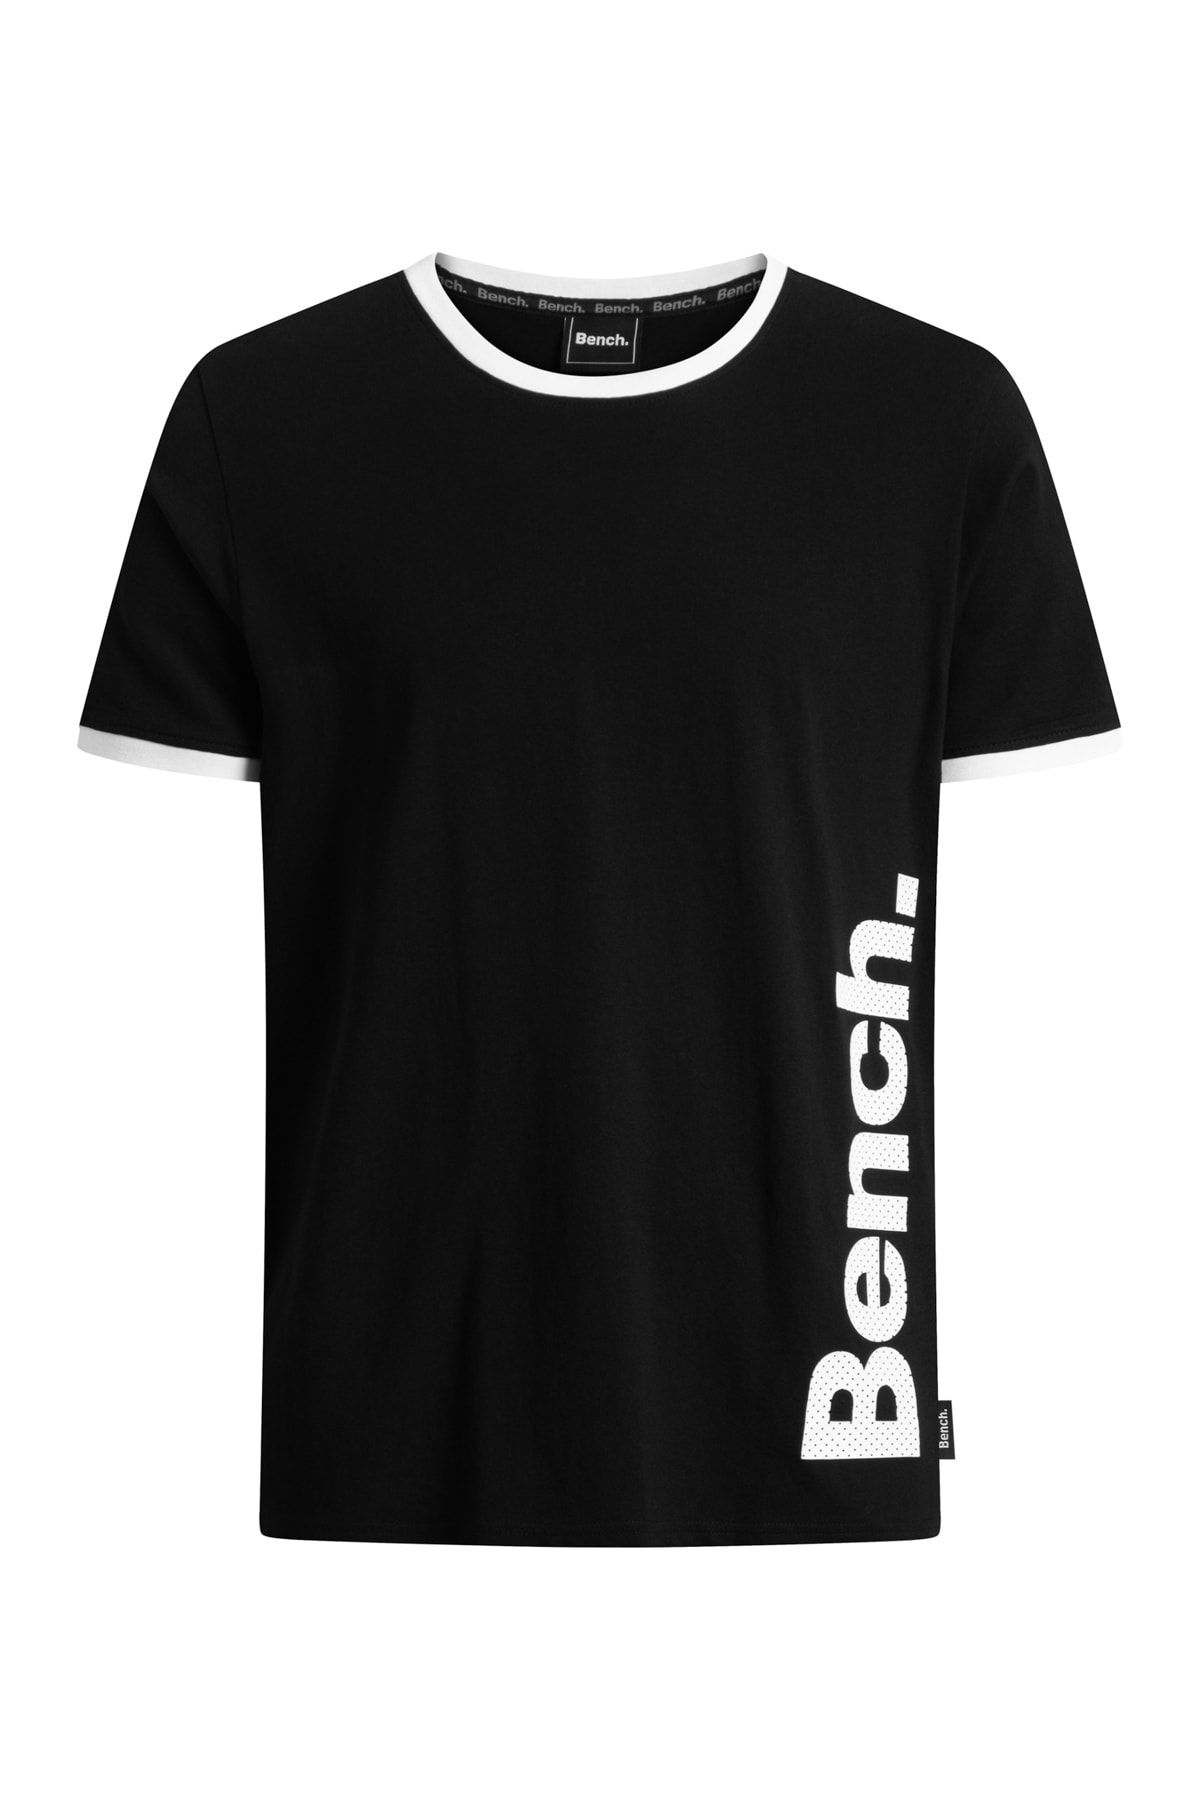 BENCH T-Shirt - Black - Regular fit - Trendyol | Shirt-Sets